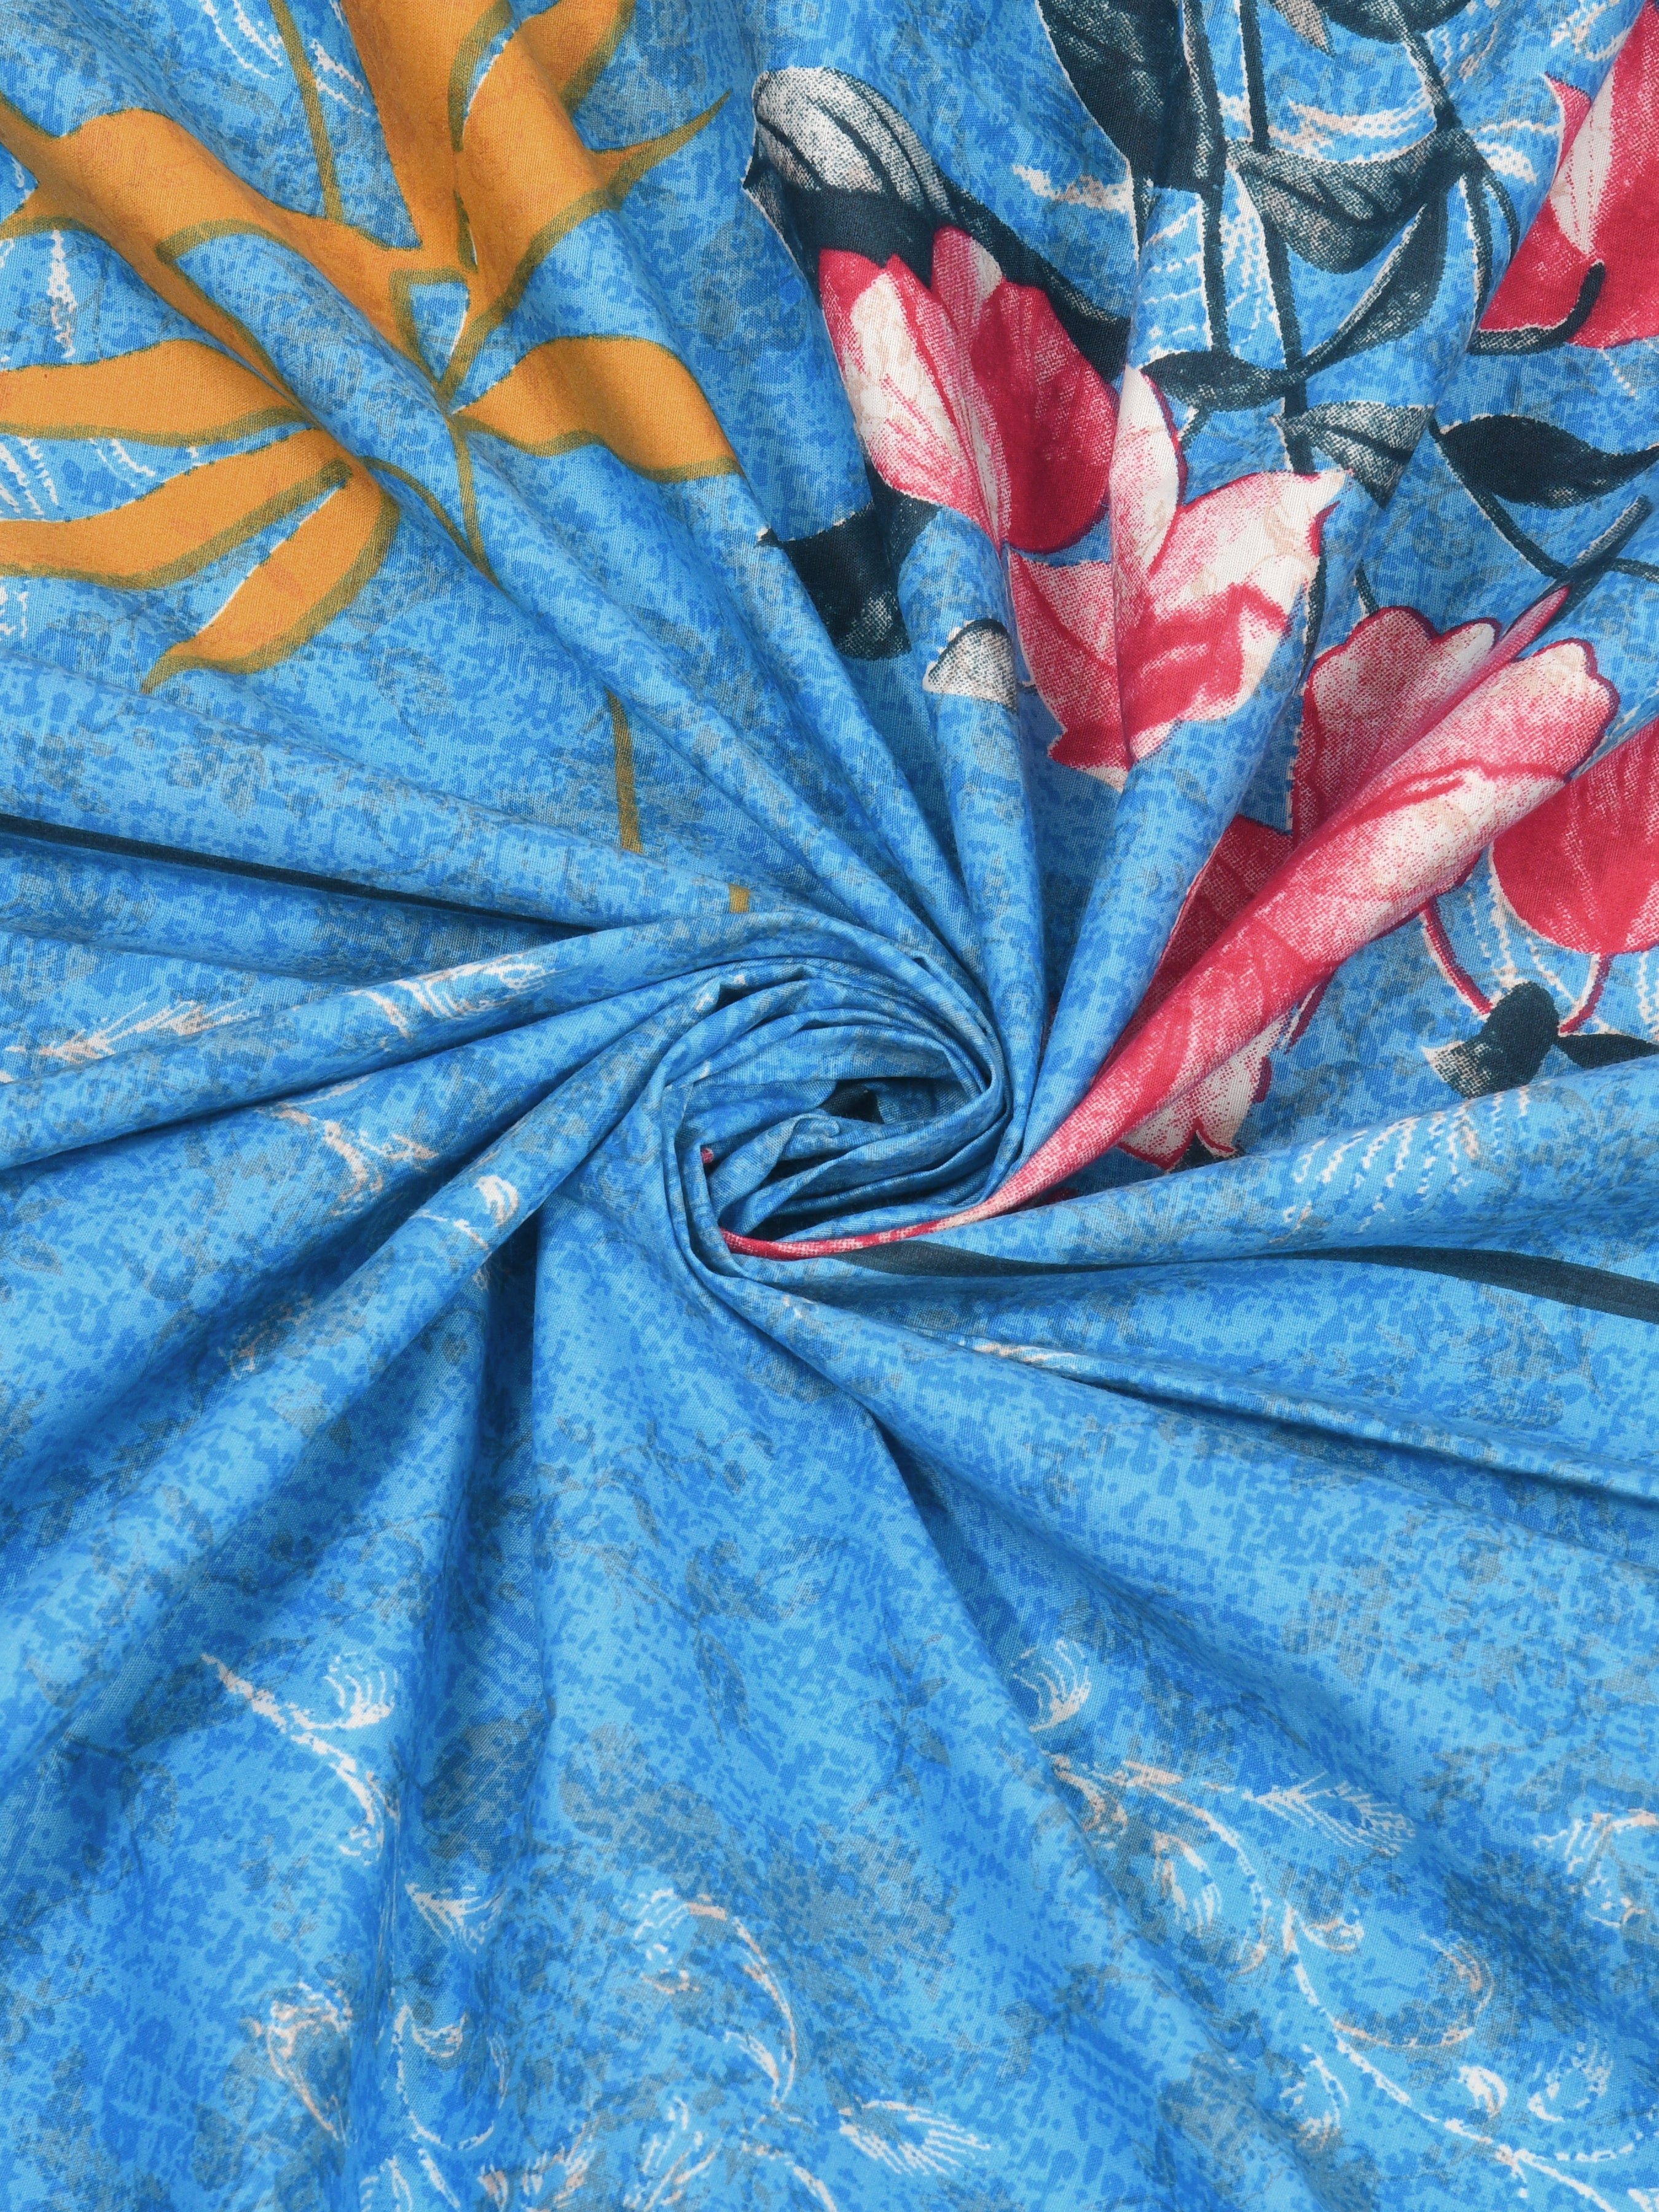 Sky Blue Floral Super King Size Cotton Bedsheet